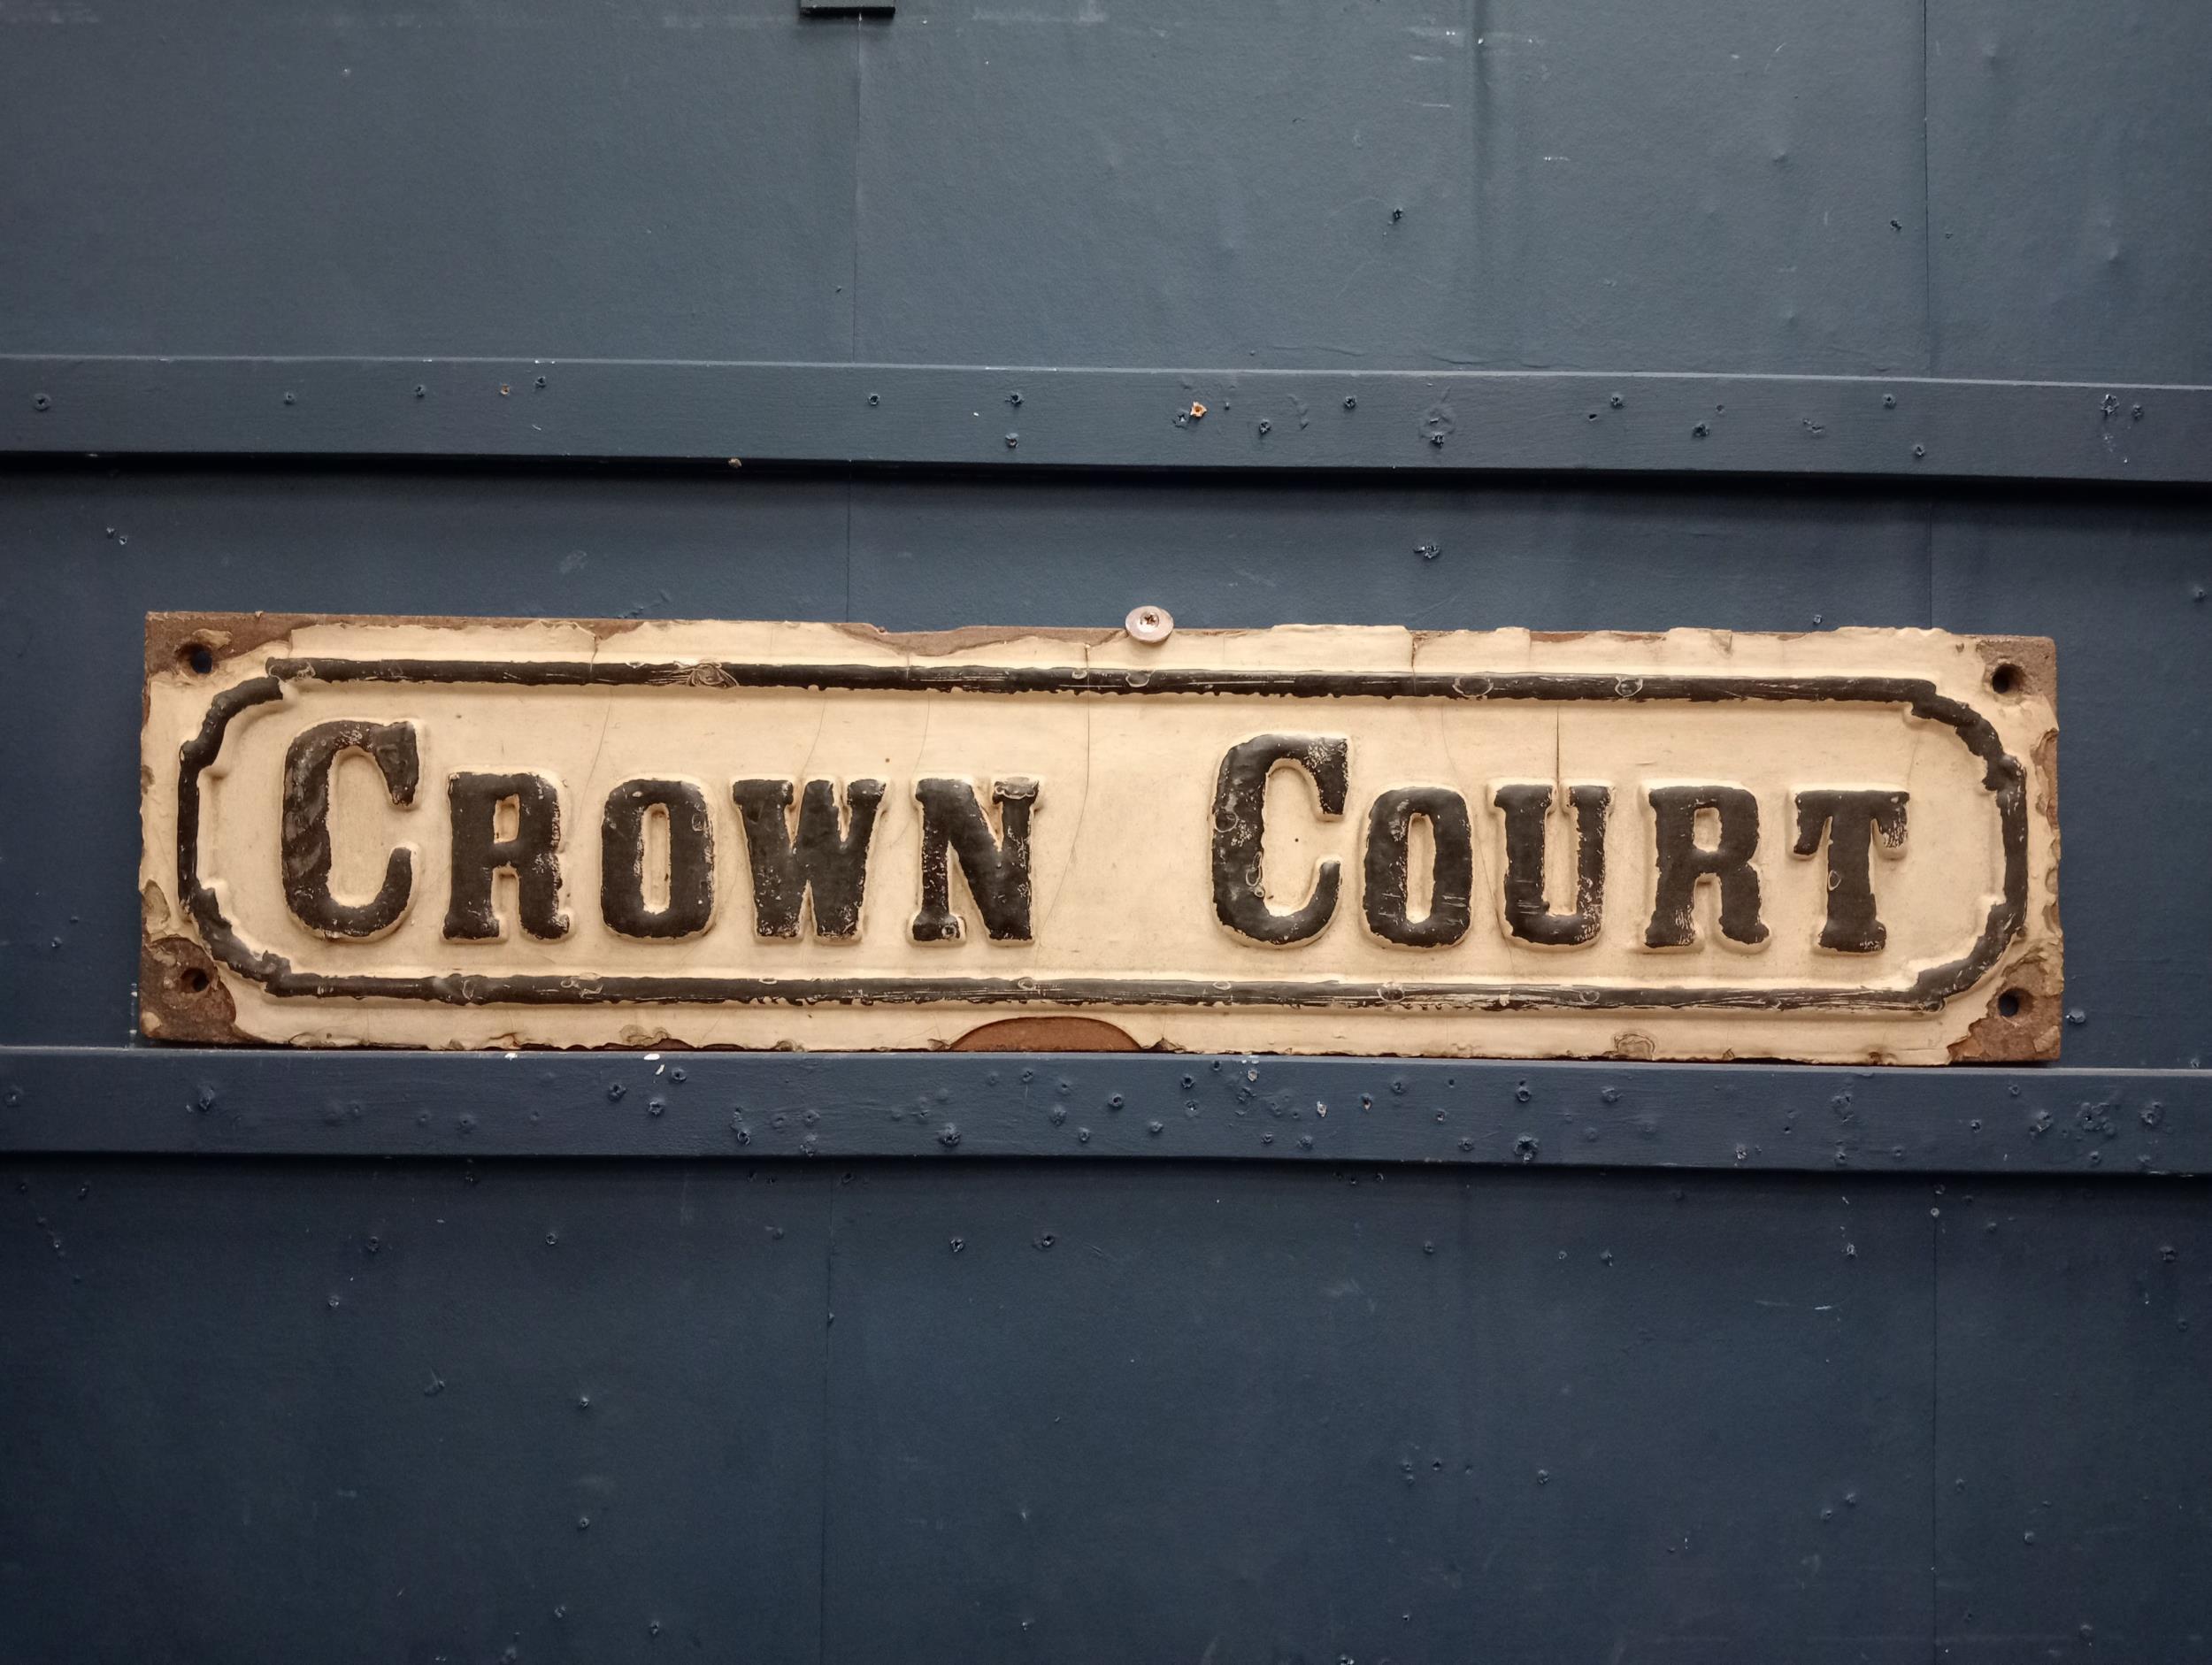 Crown court cast iron street sign {H 22cm x W 97cm x D 2cm }.